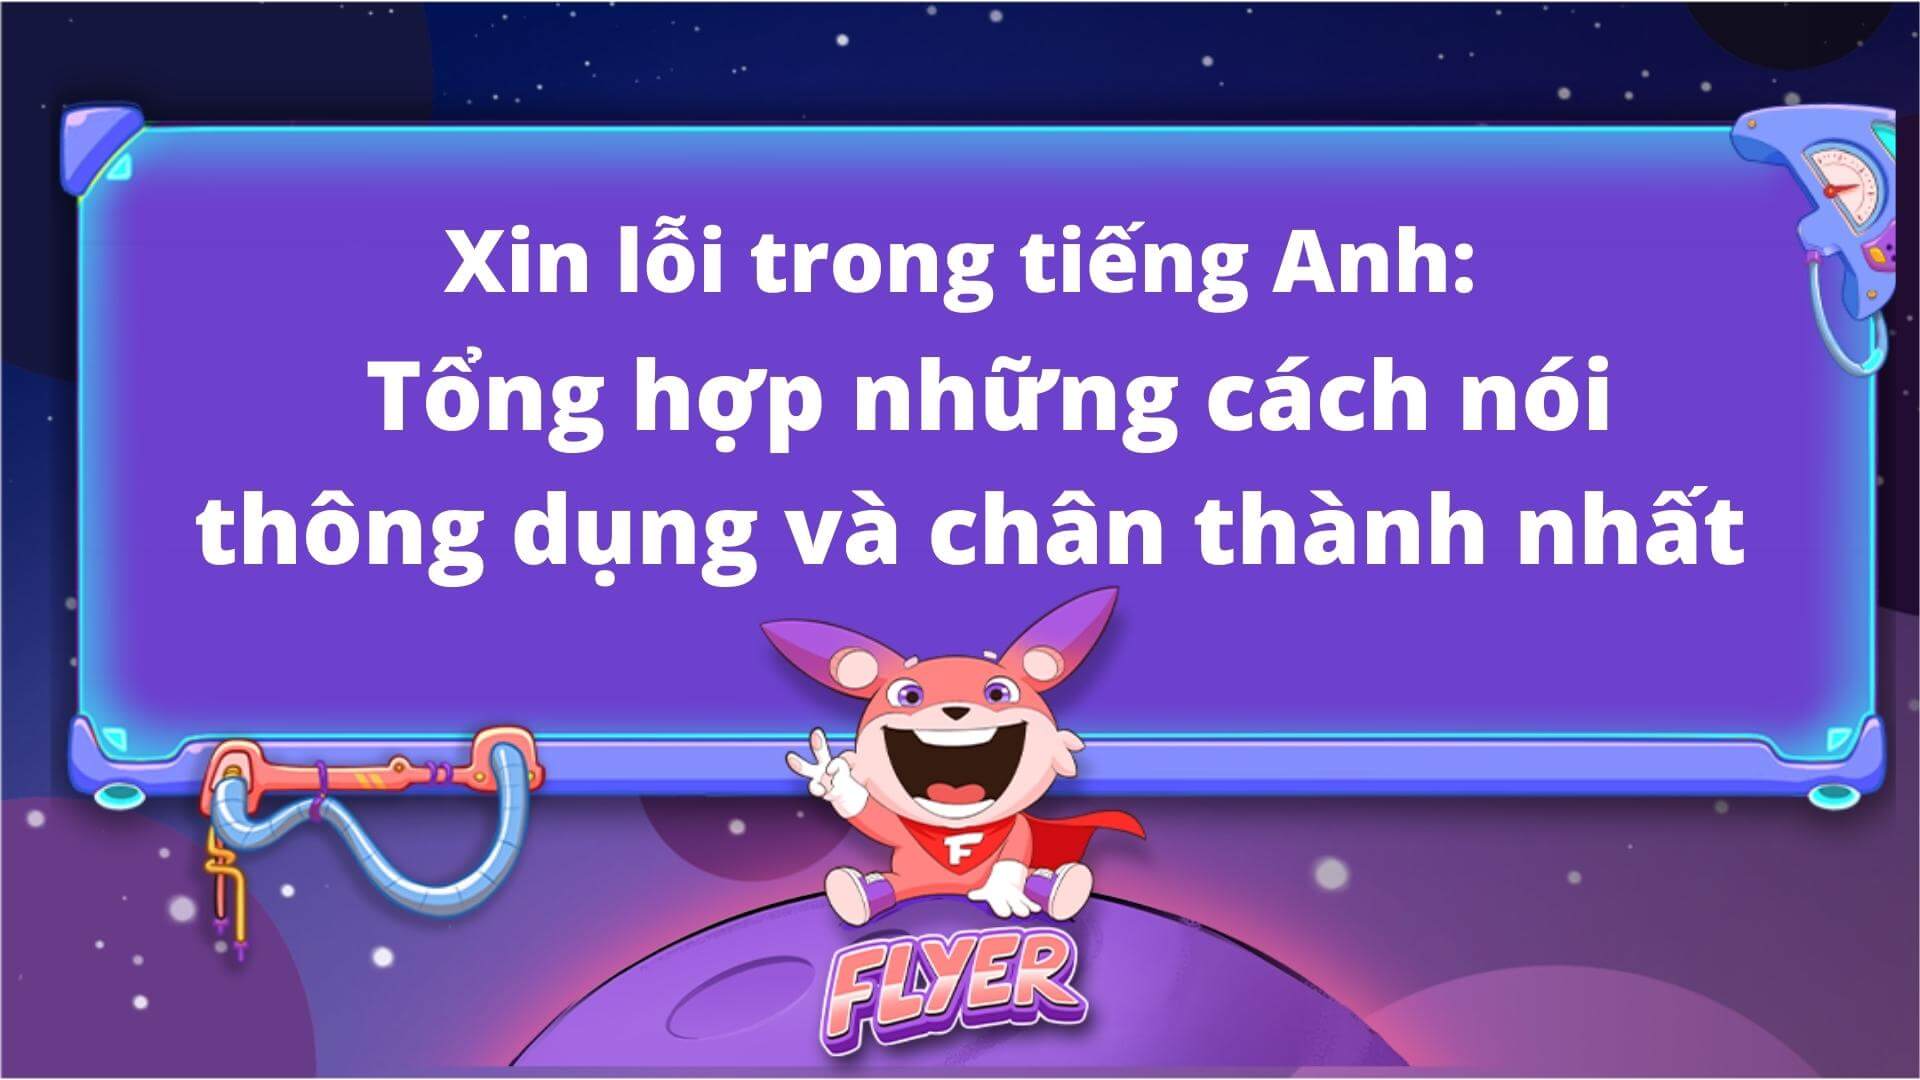 How to say Mong bạn thông cảm in English politely?
